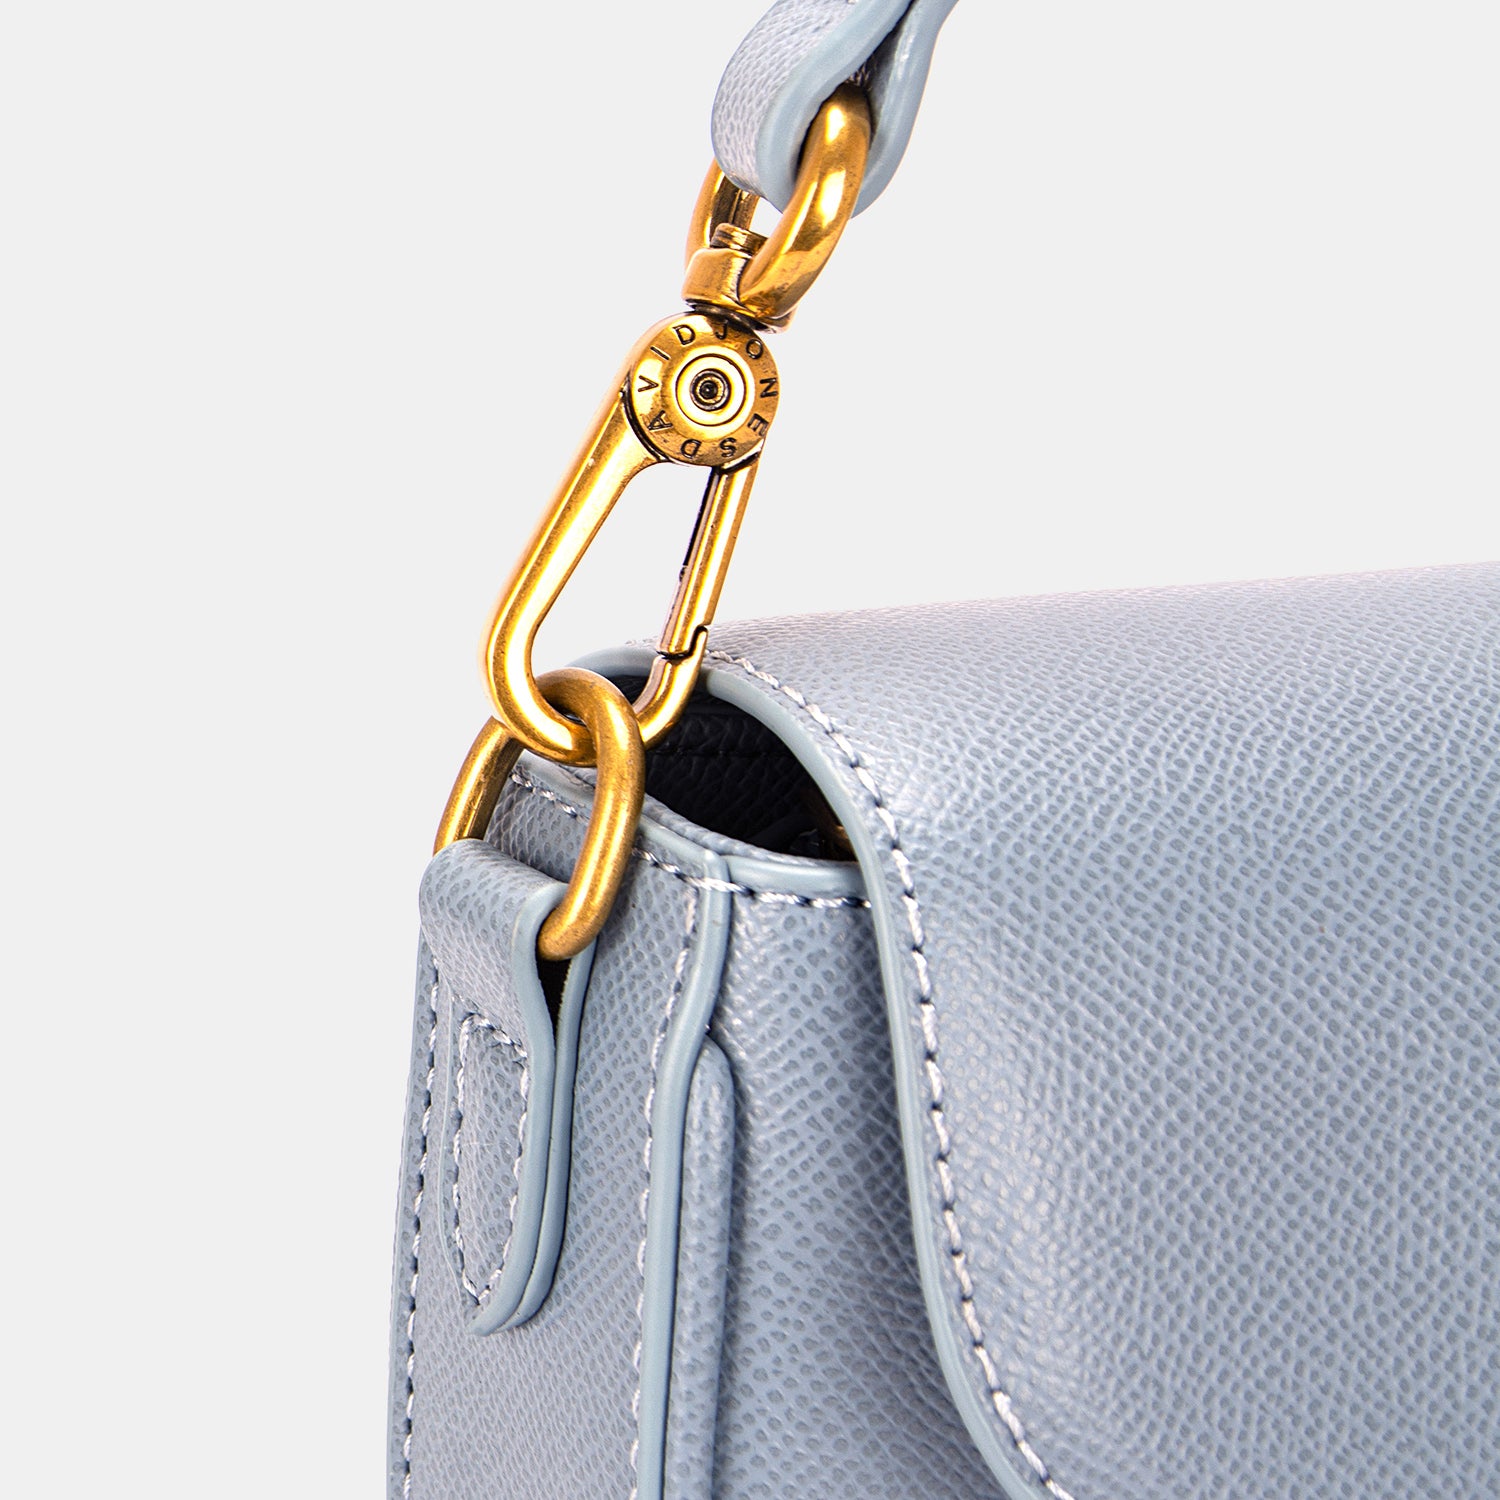 PU Leather Shoulder Bag | Shoulder Bag - CHANELIA